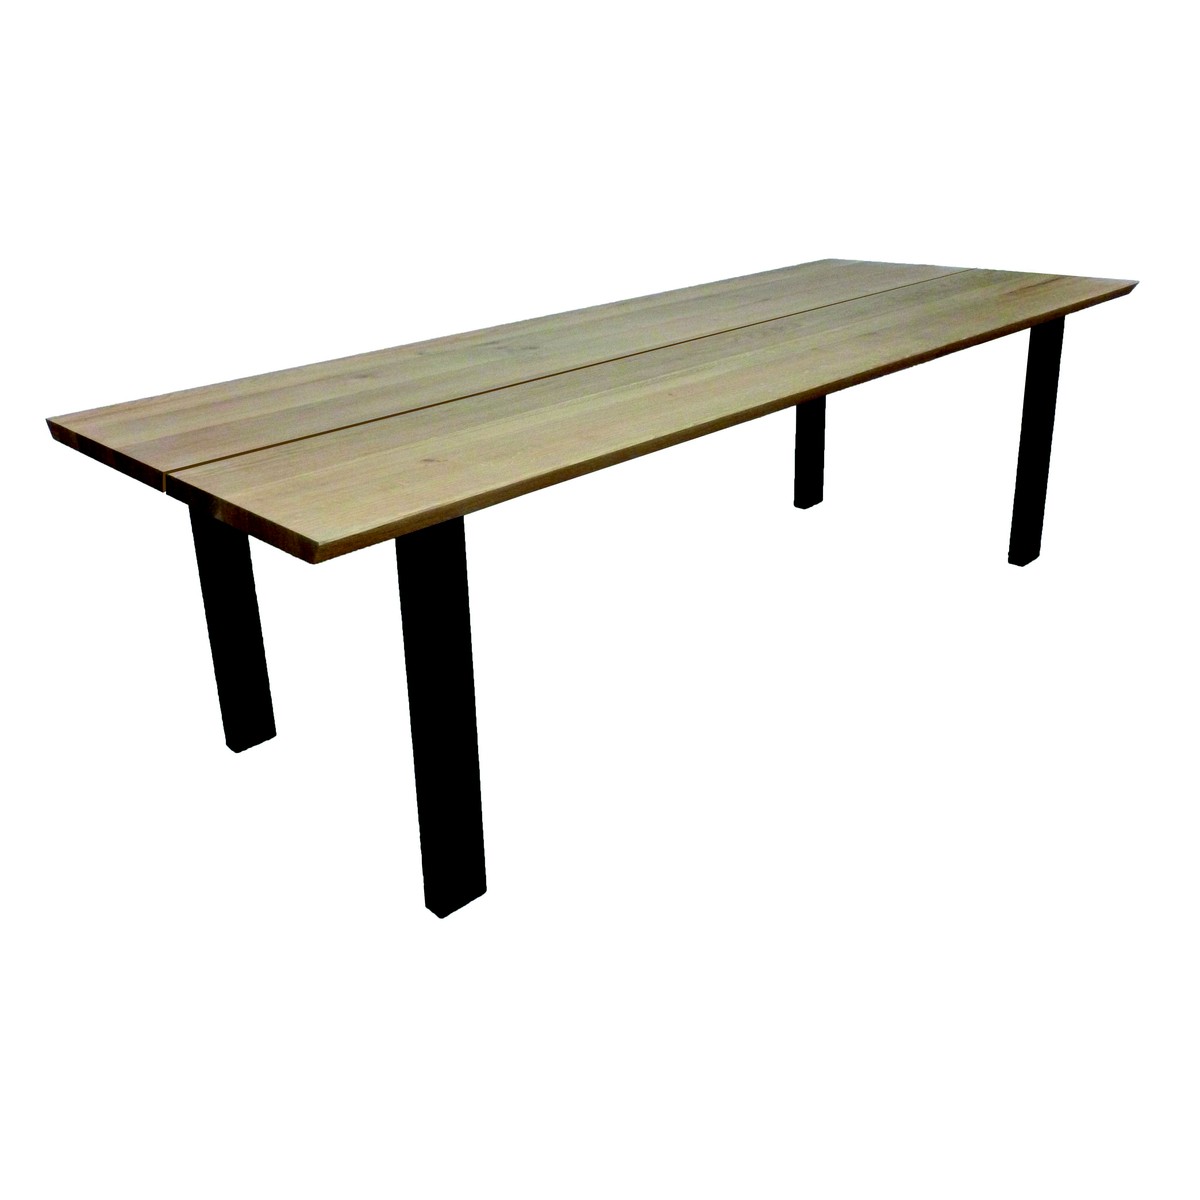   Table haute Roca Seven ouverte rectangulaire  160x100x90cm